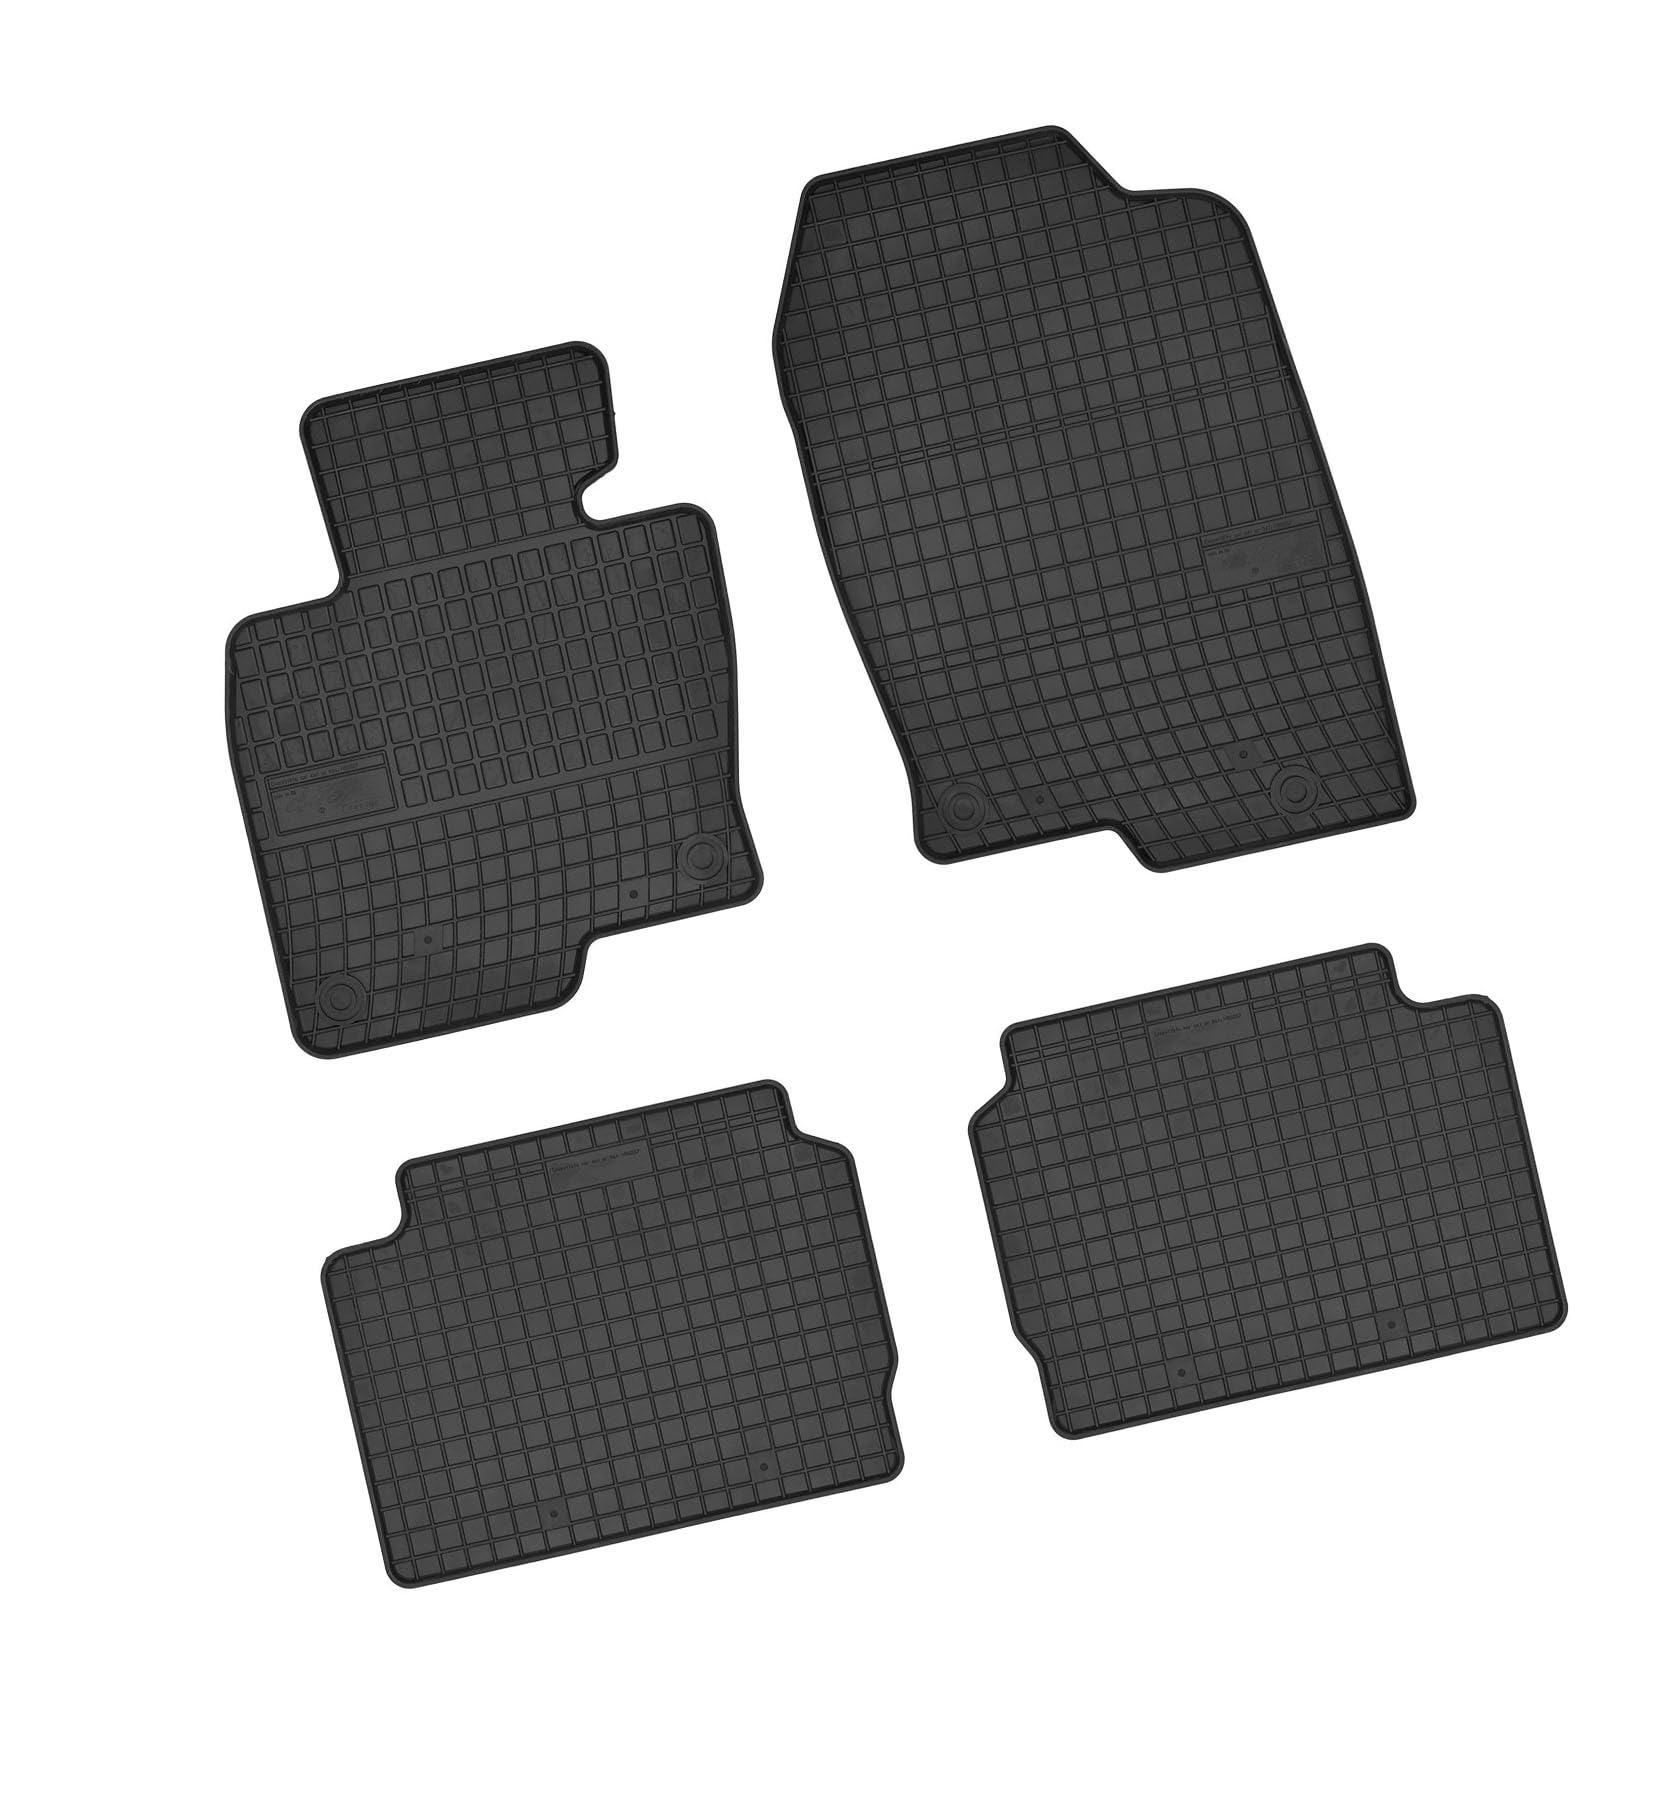 Bär-AfC MA61635 Gummimatten Auto Fußmatten Schwarz, Erhöhter Rand, Set 4-teilig, Passgenau für Mazda CX-5 Typ KF Baujahr ab 2017 von Bär-AfC